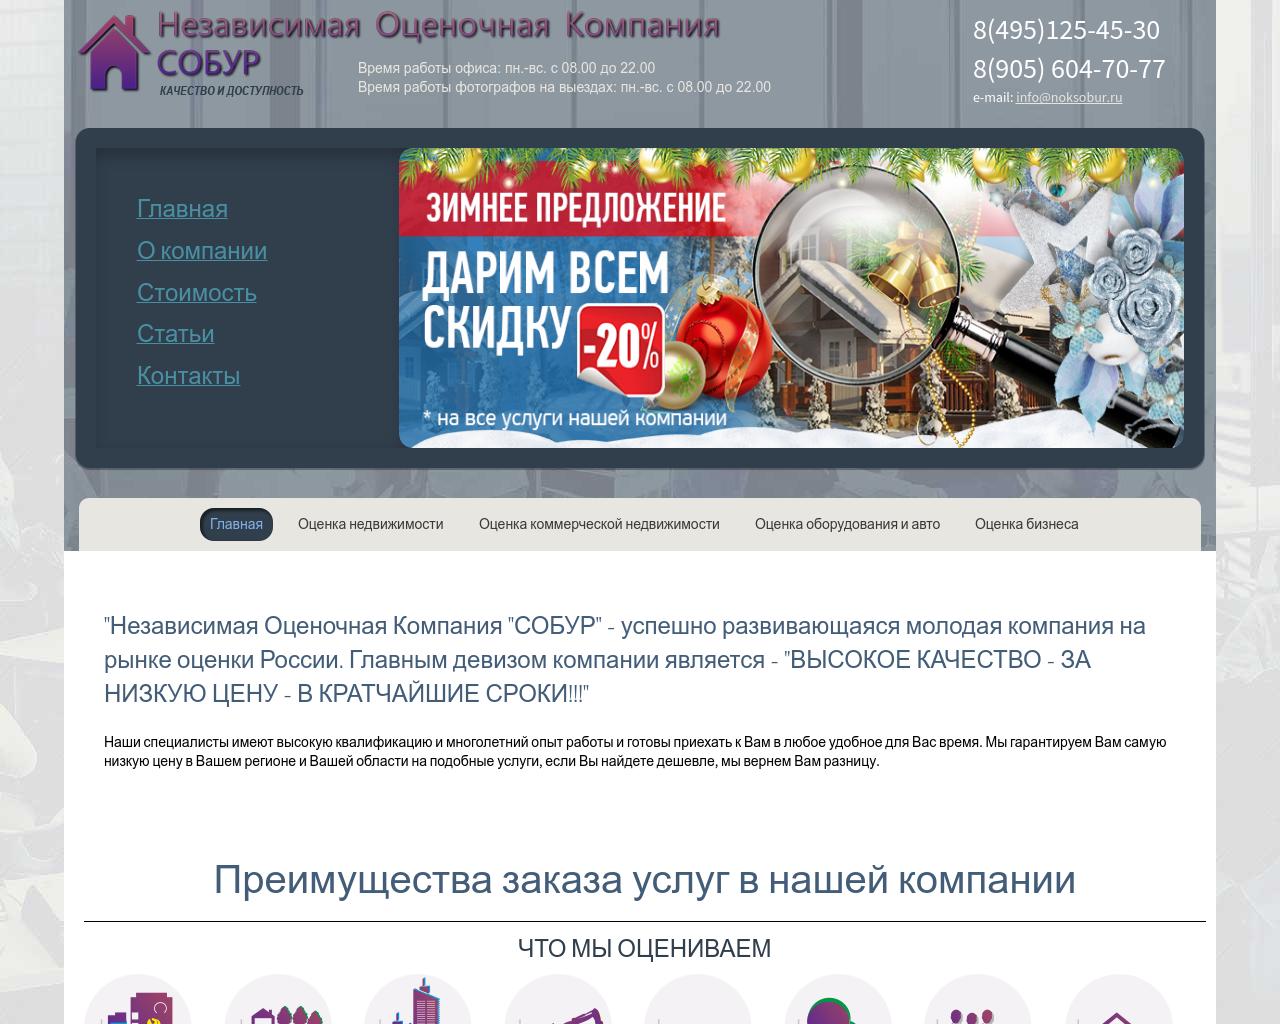 Изображение сайта noksobur.ru в разрешении 1280x1024